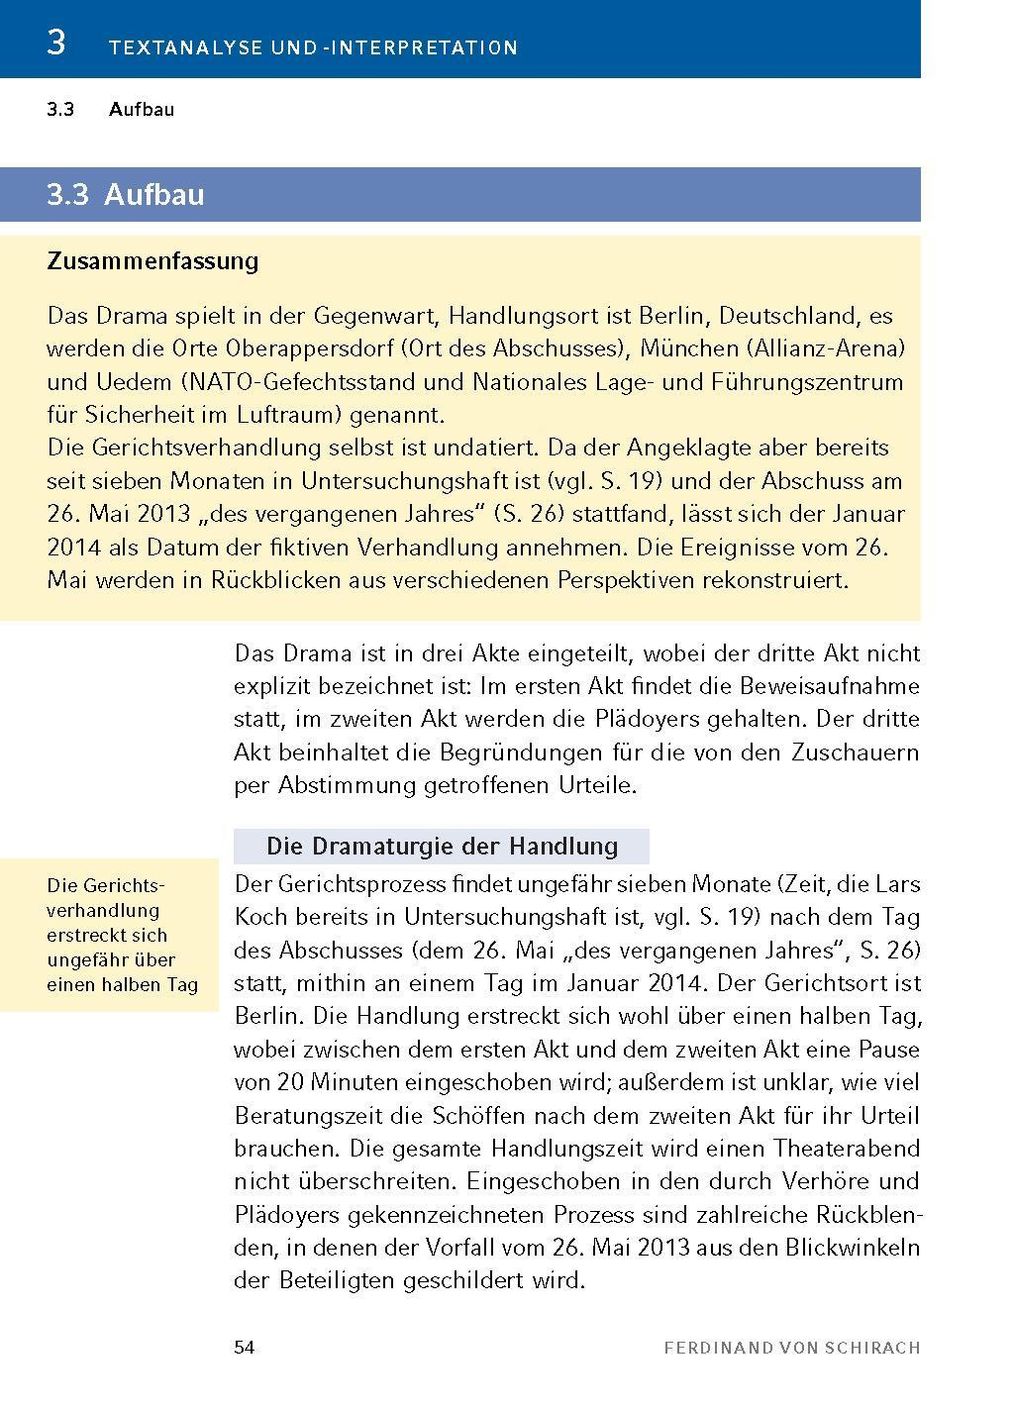 Terror von Ferdinand von Schirach - Textanalyse und Interpretation |  Weltbild.ch